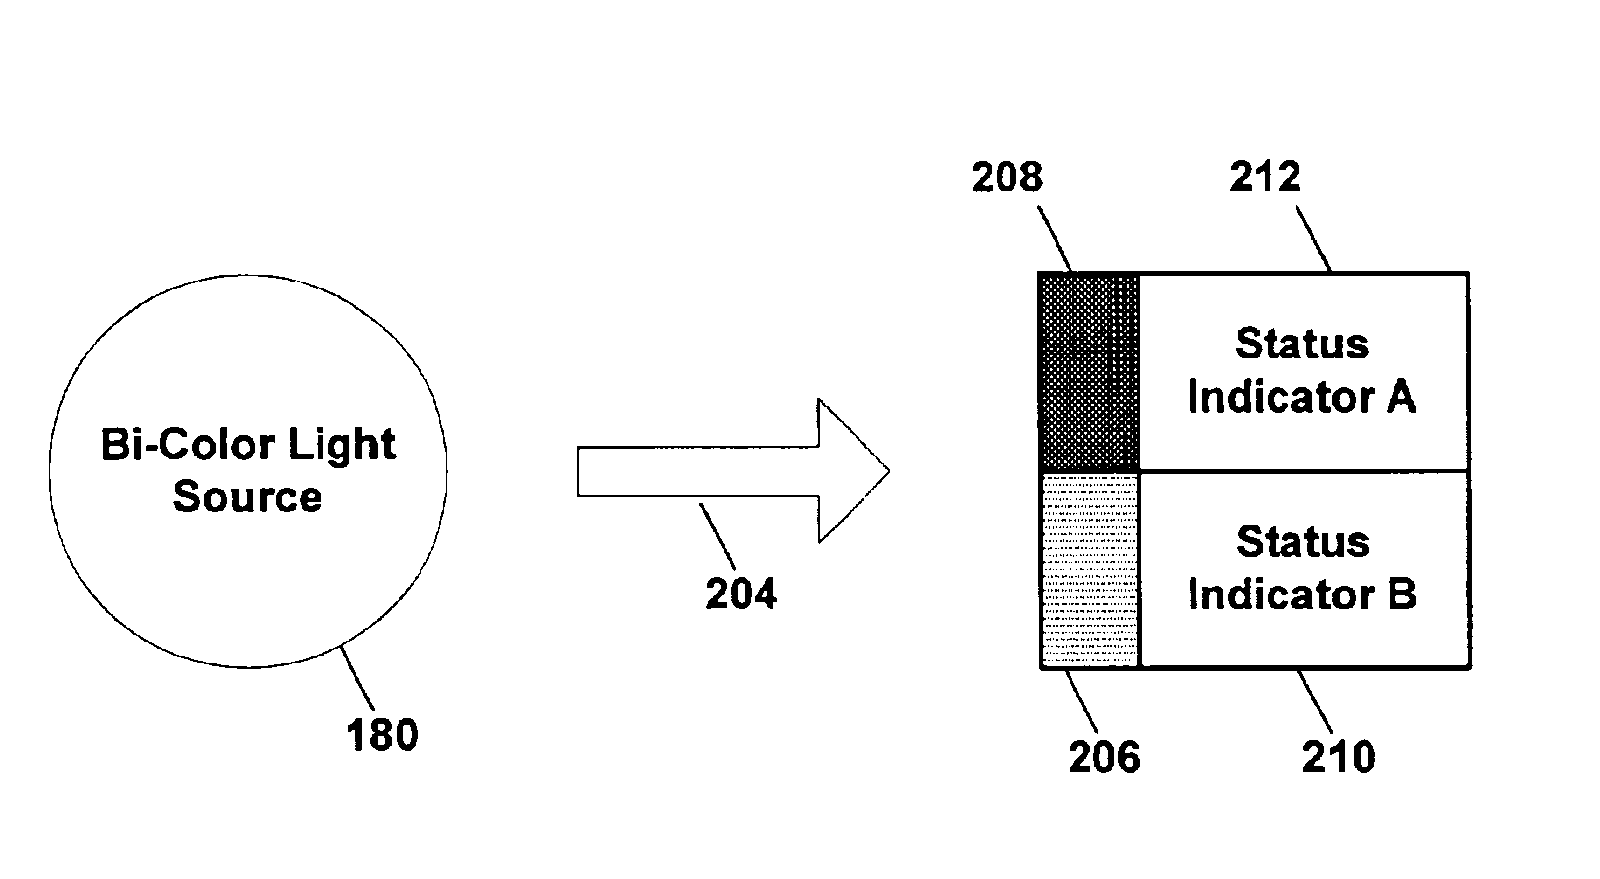 Bi-color light source for indicating status of information handling system